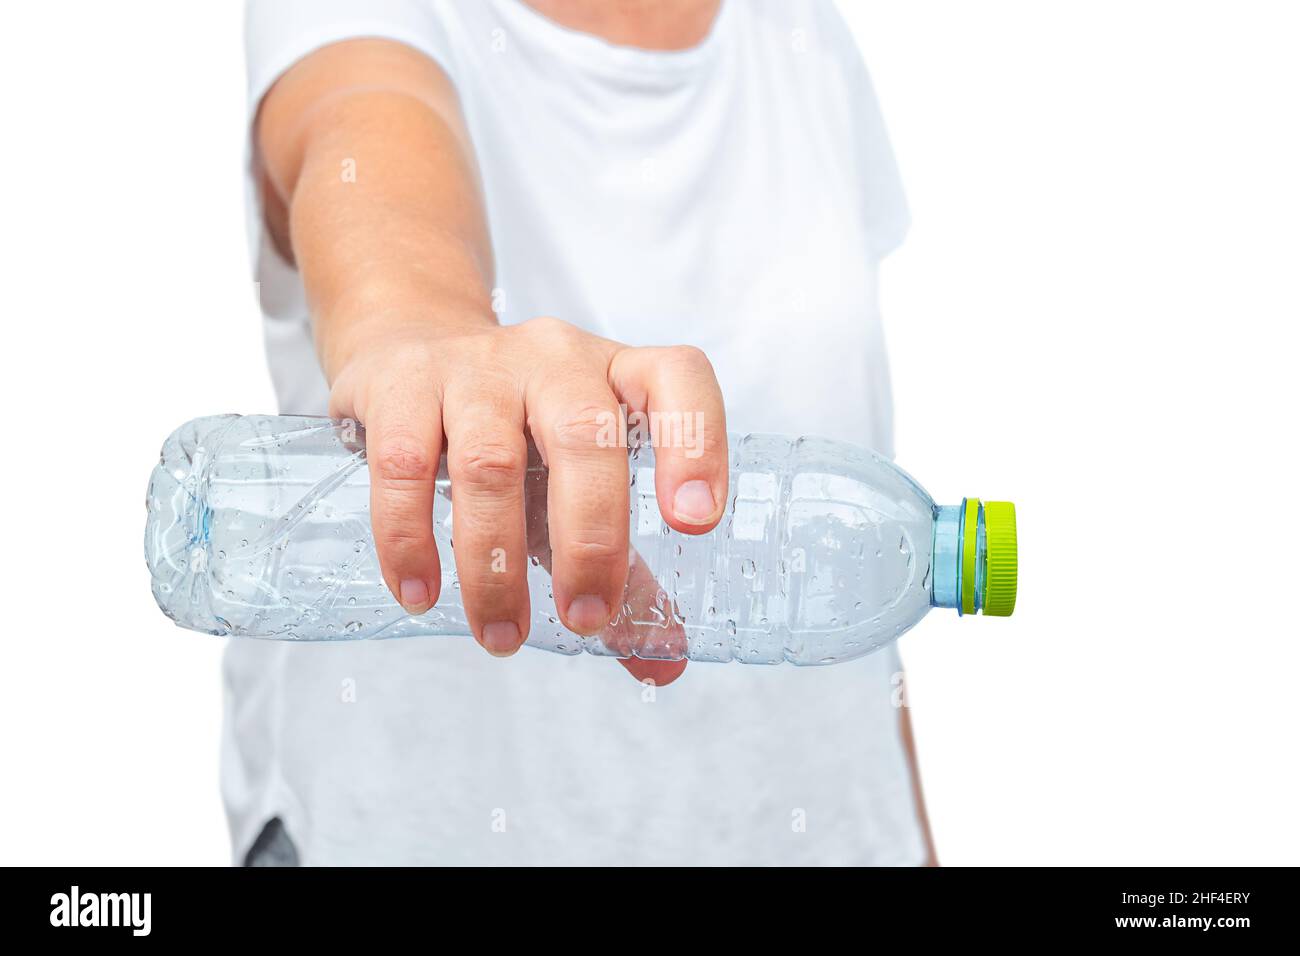 Botella de agua grande para el gimnasio, aislado en un fondo blanco  Fotografía de stock - Alamy